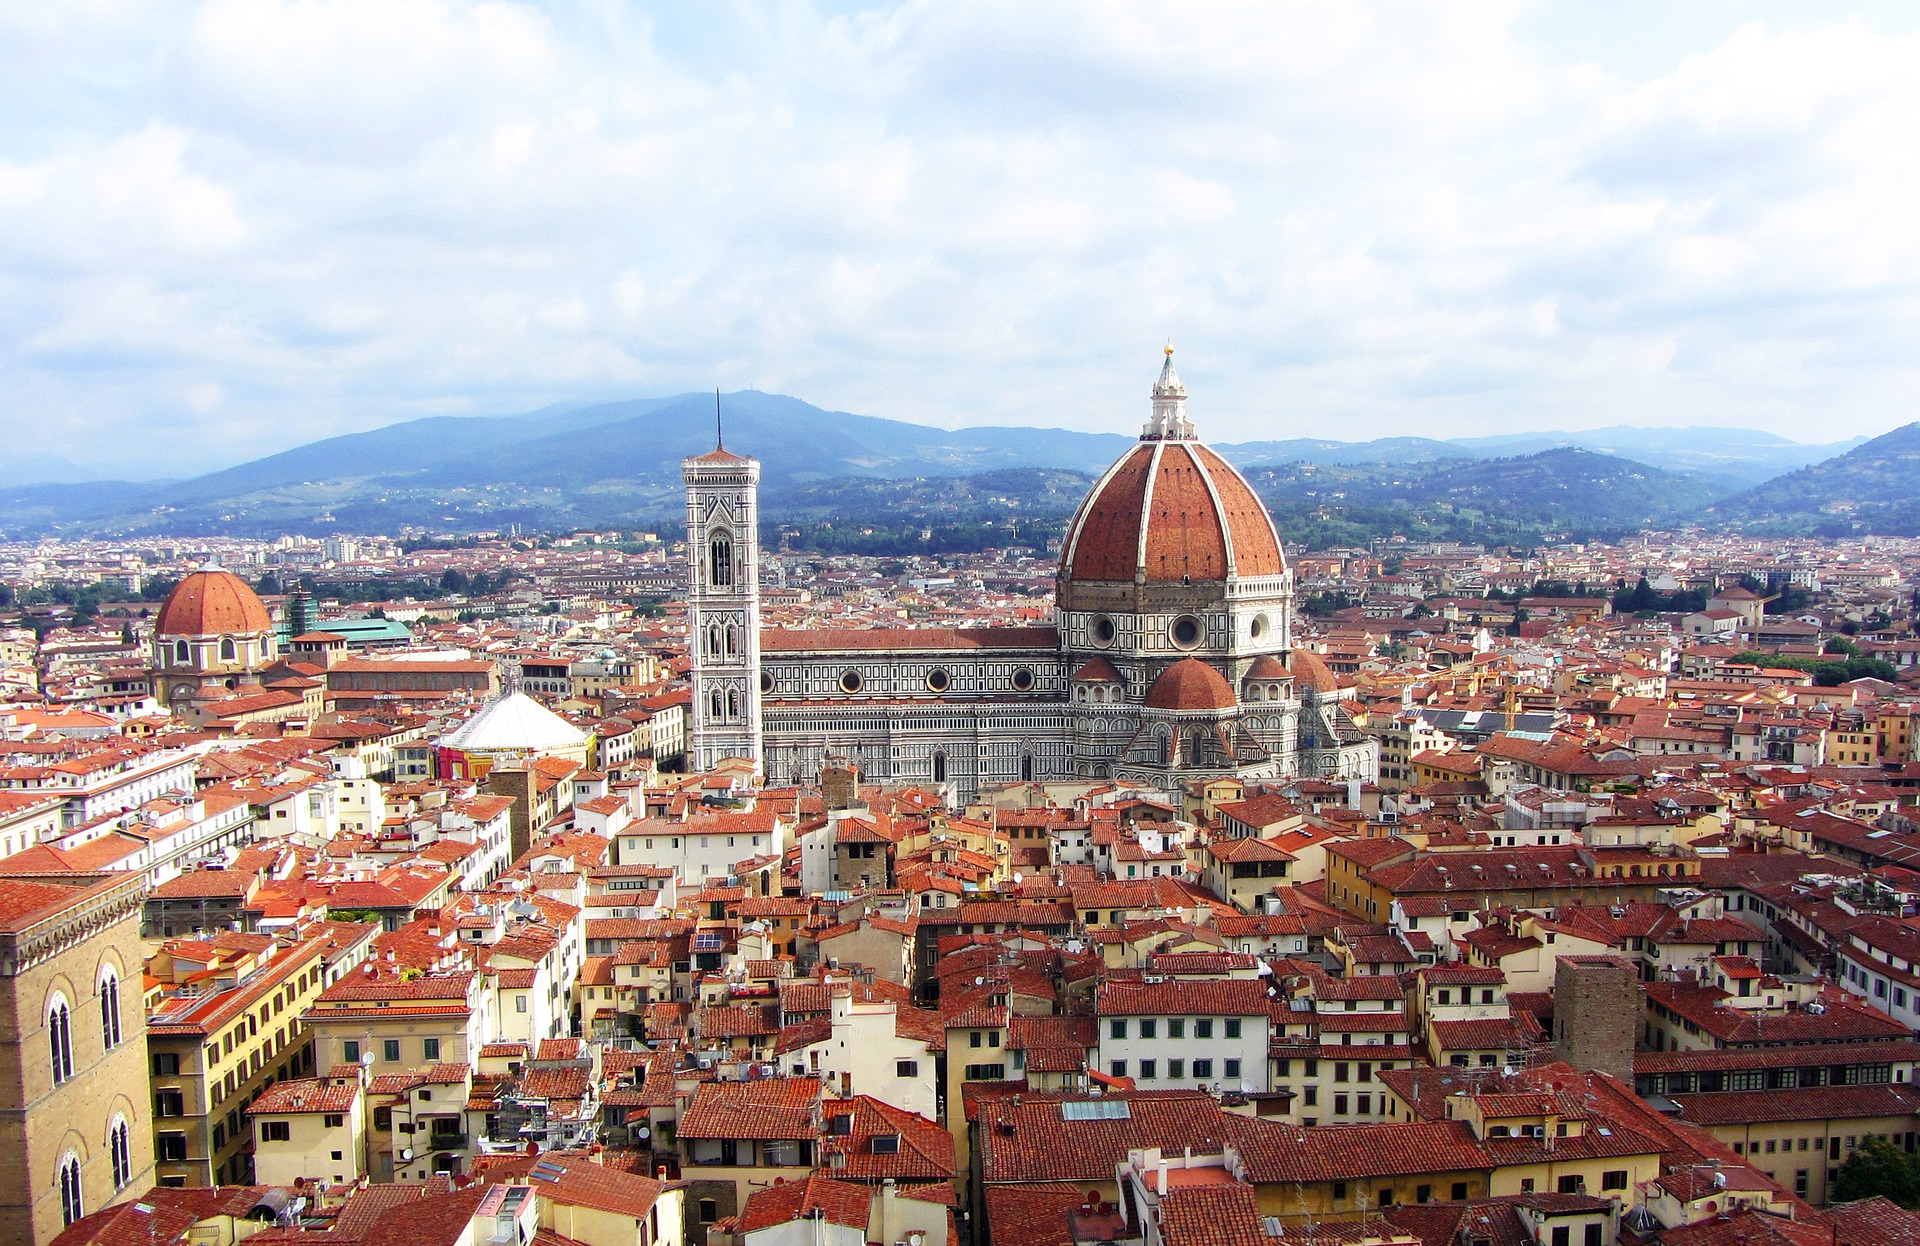 GRUBER Logistics Niederlassung in Florenz bietet ab heute Sammelgutverkehr von Italien nach ganz Europa an